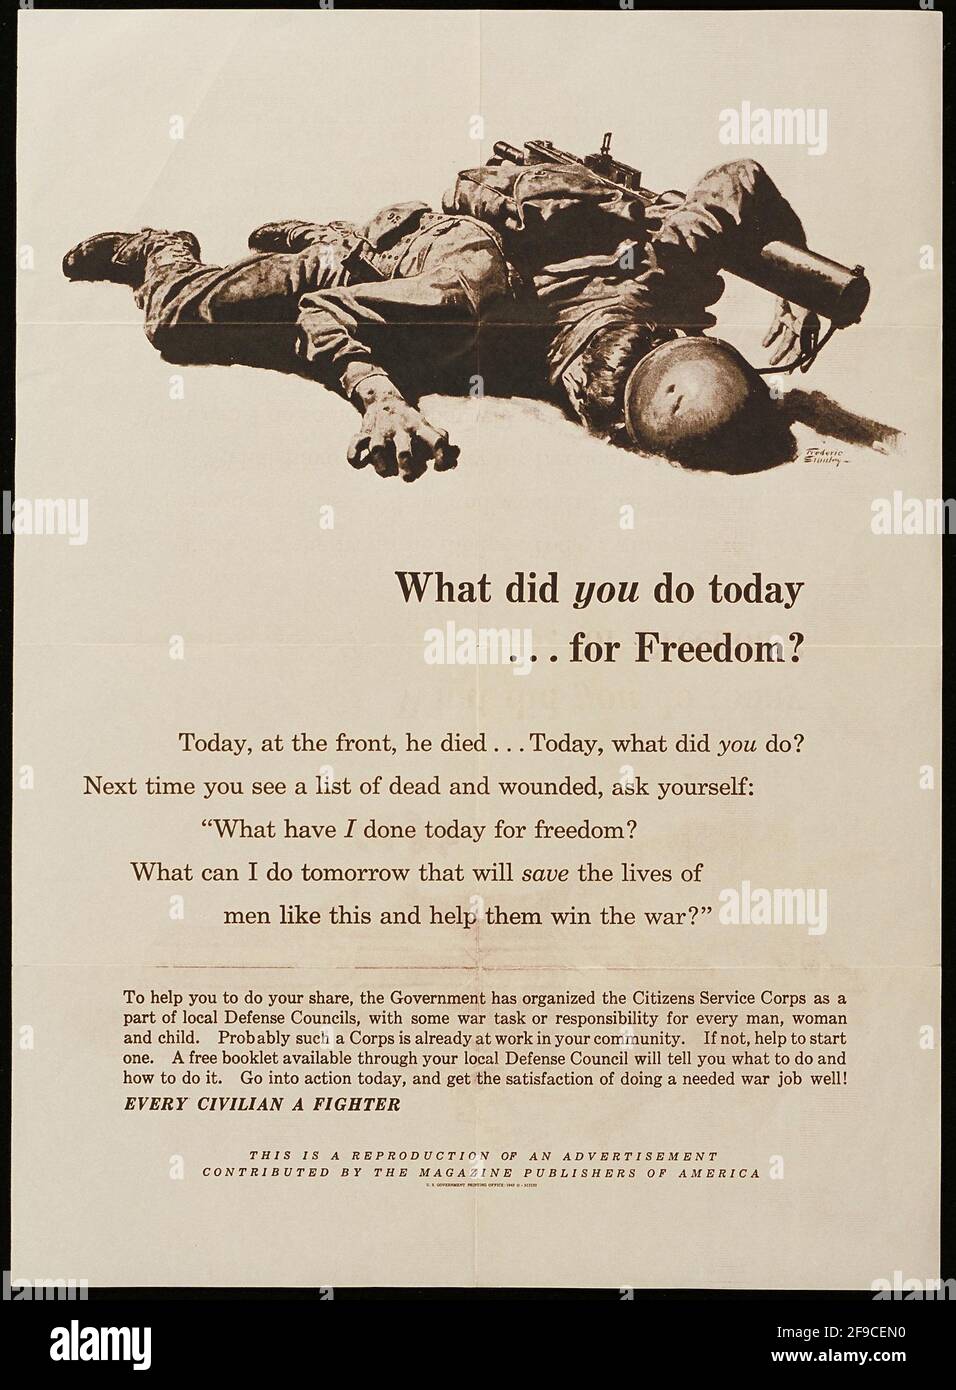 Un poster americano della seconda guerra mondiale per la difesa civile Foto Stock